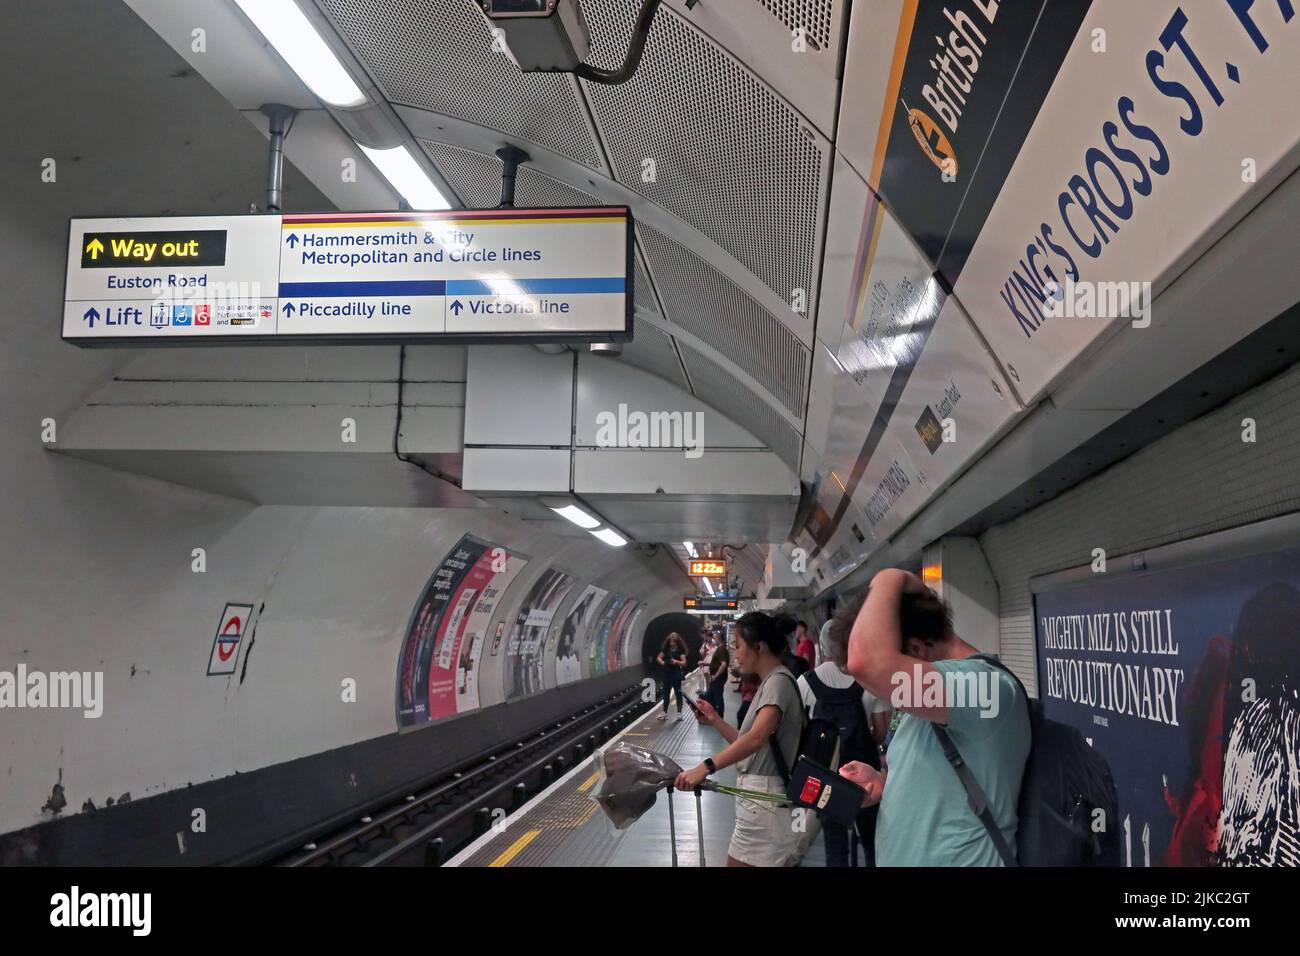 Station de métro Victoria Line à Kings Cross, St Pancras, Londres, centre-ville, Angleterre, Royaume-Uni Banque D'Images